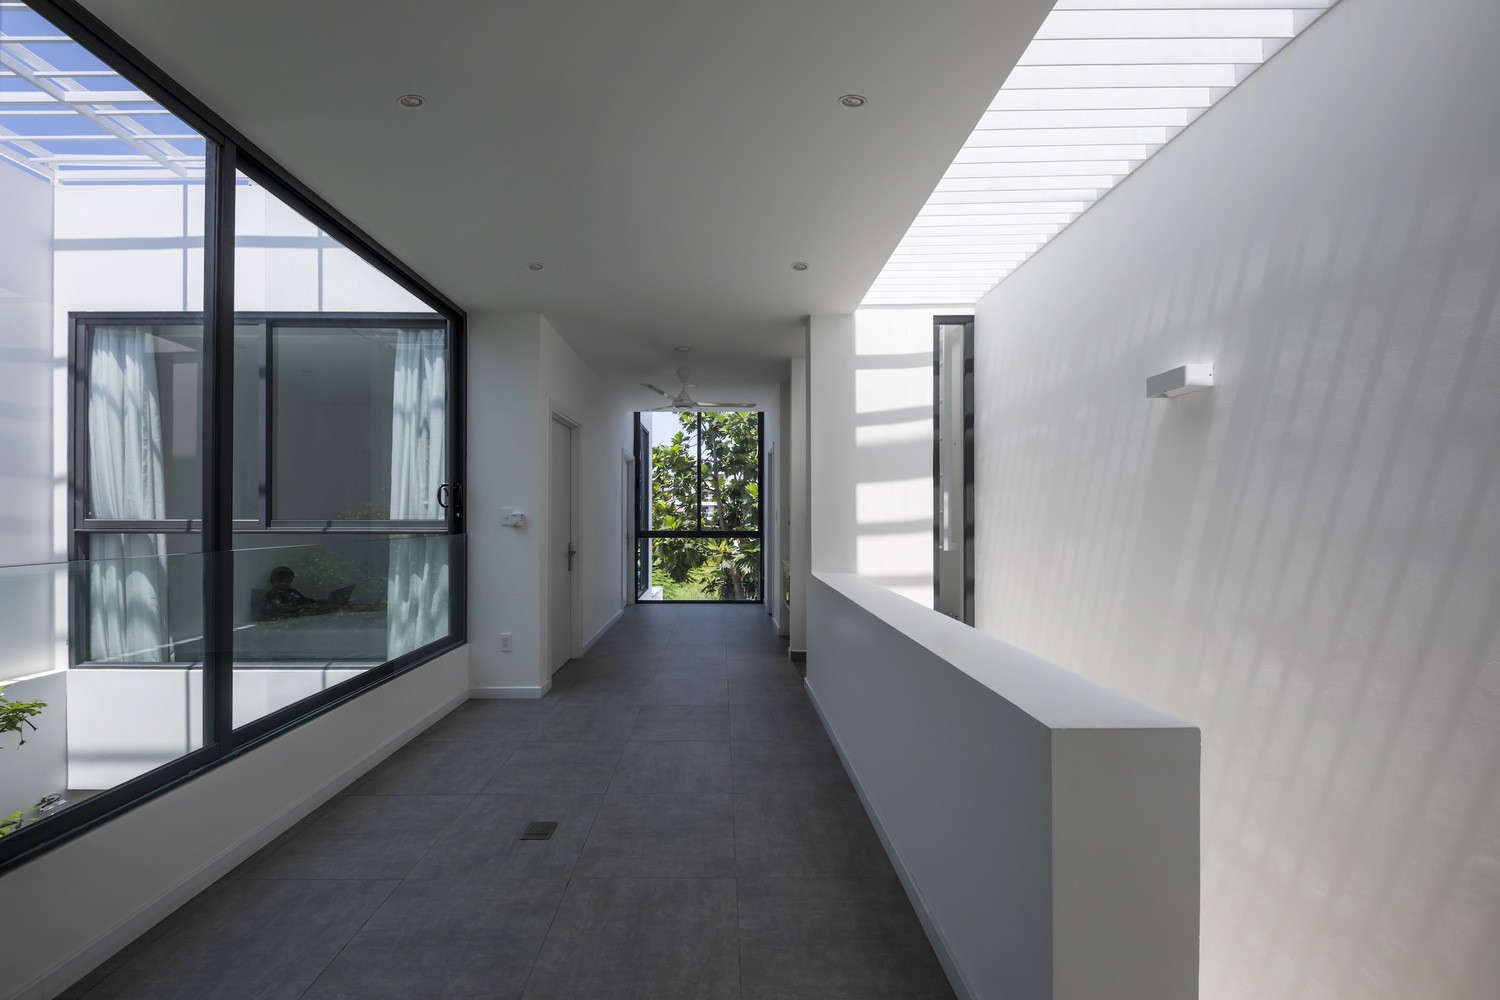 Hành lang tầng 2 rộng rãi, thông thoáng, ấn tượng chính bởi các đường nét tinh giản trong thiết kế.